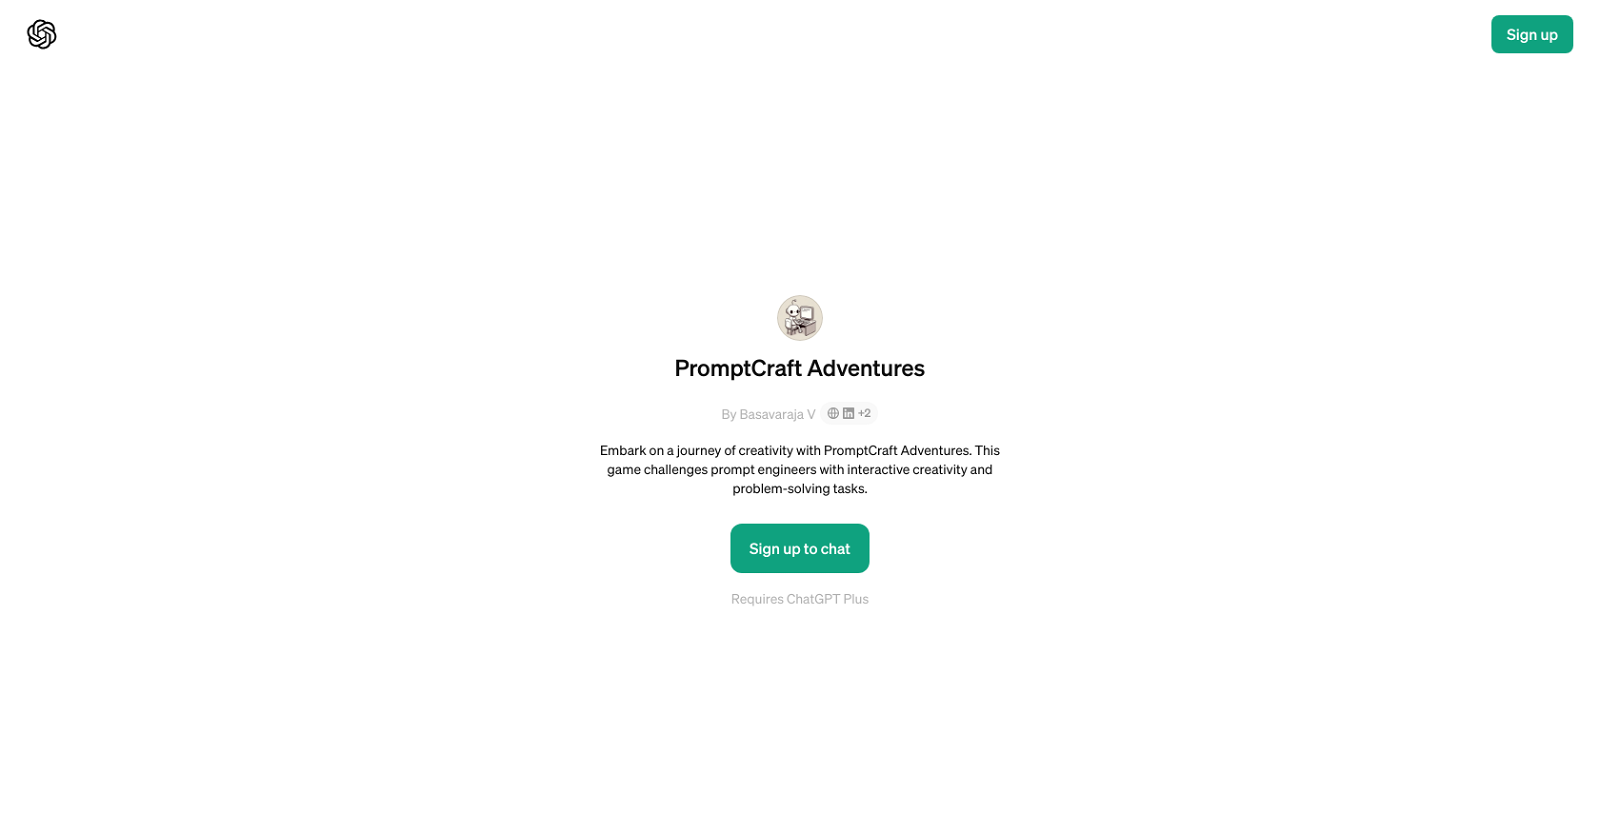 PromptCraft Adventures website